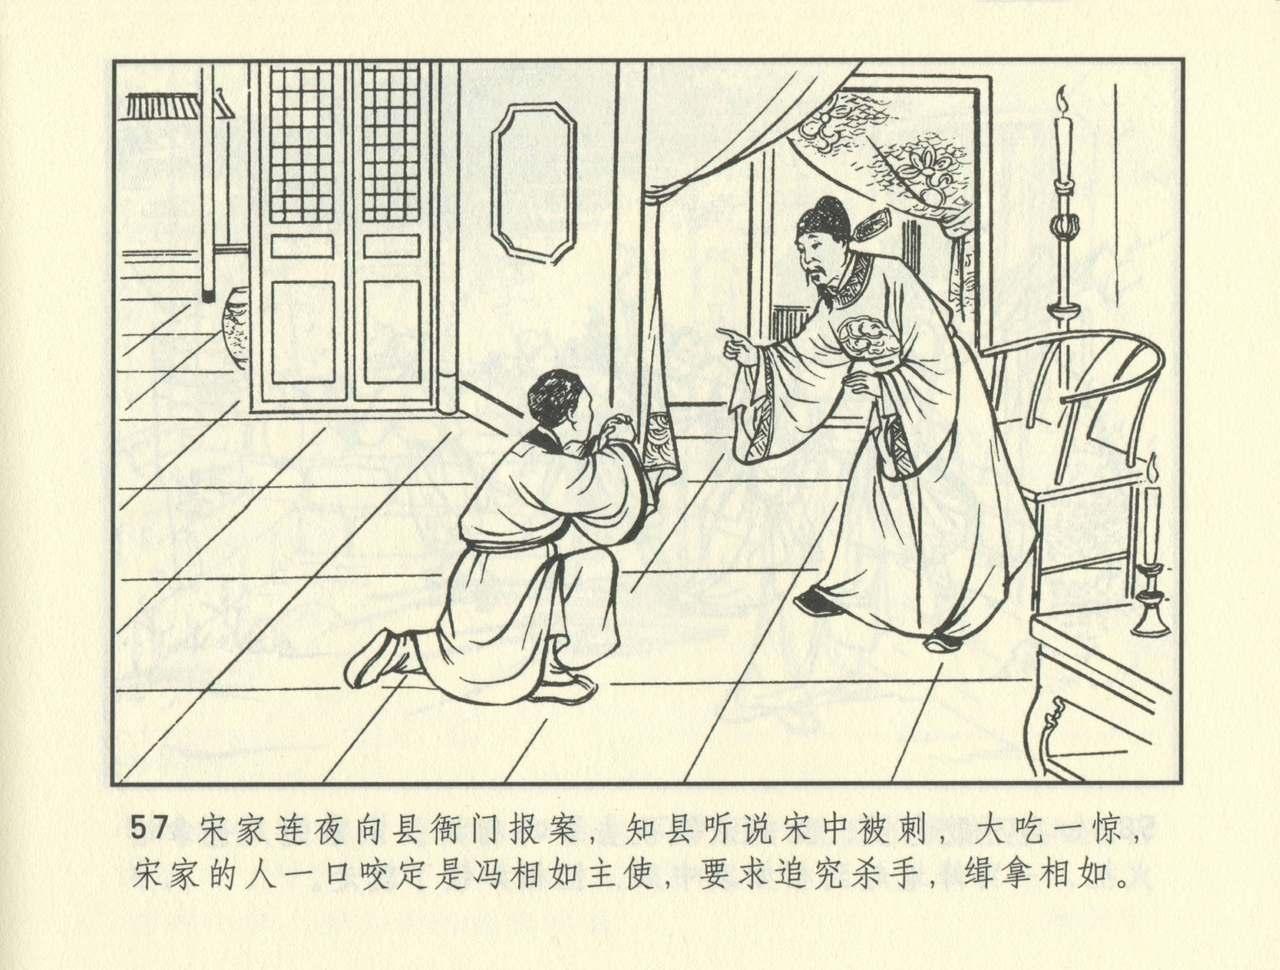 聊斋志异 张玮等绘 天津人民美术出版社 卷二十一 ~ 三十 397